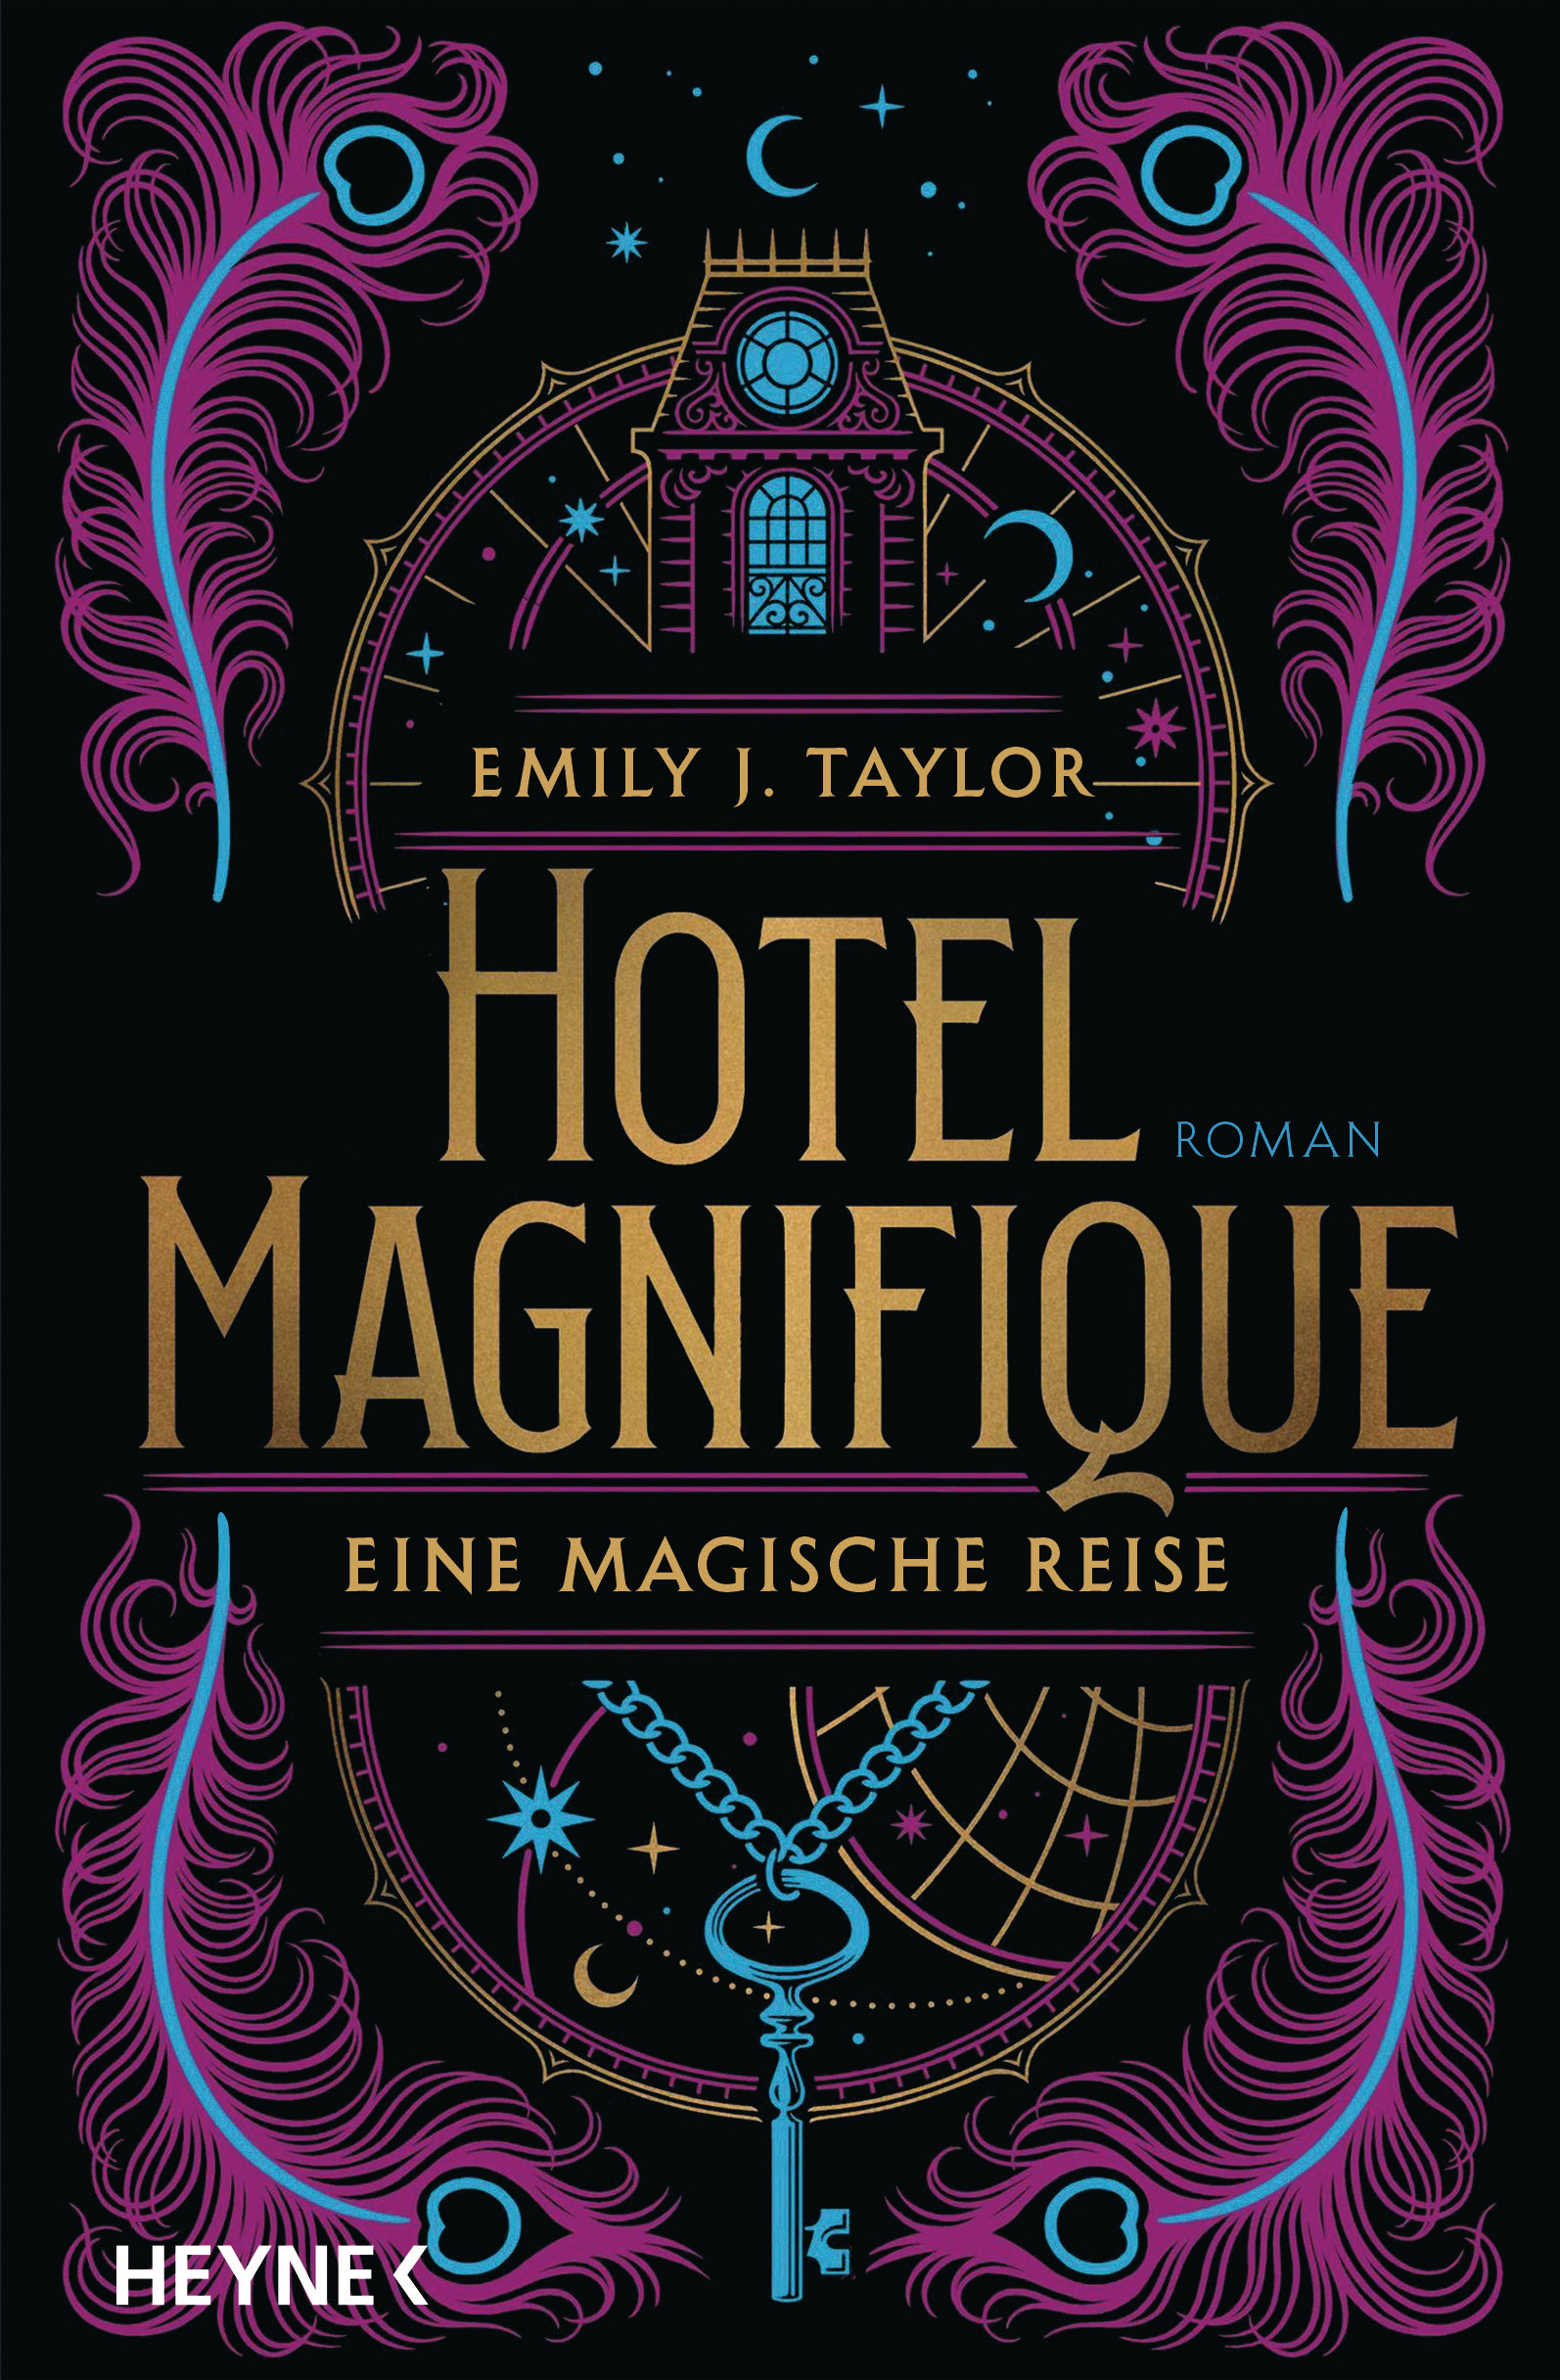 Bücherblog. Neuerscheinungen. Buchcover. Hotel Magnifique - Eine magische Reise von Emily J. Taylor. Fantasy. Historische Fantasy. Heyne Verlag